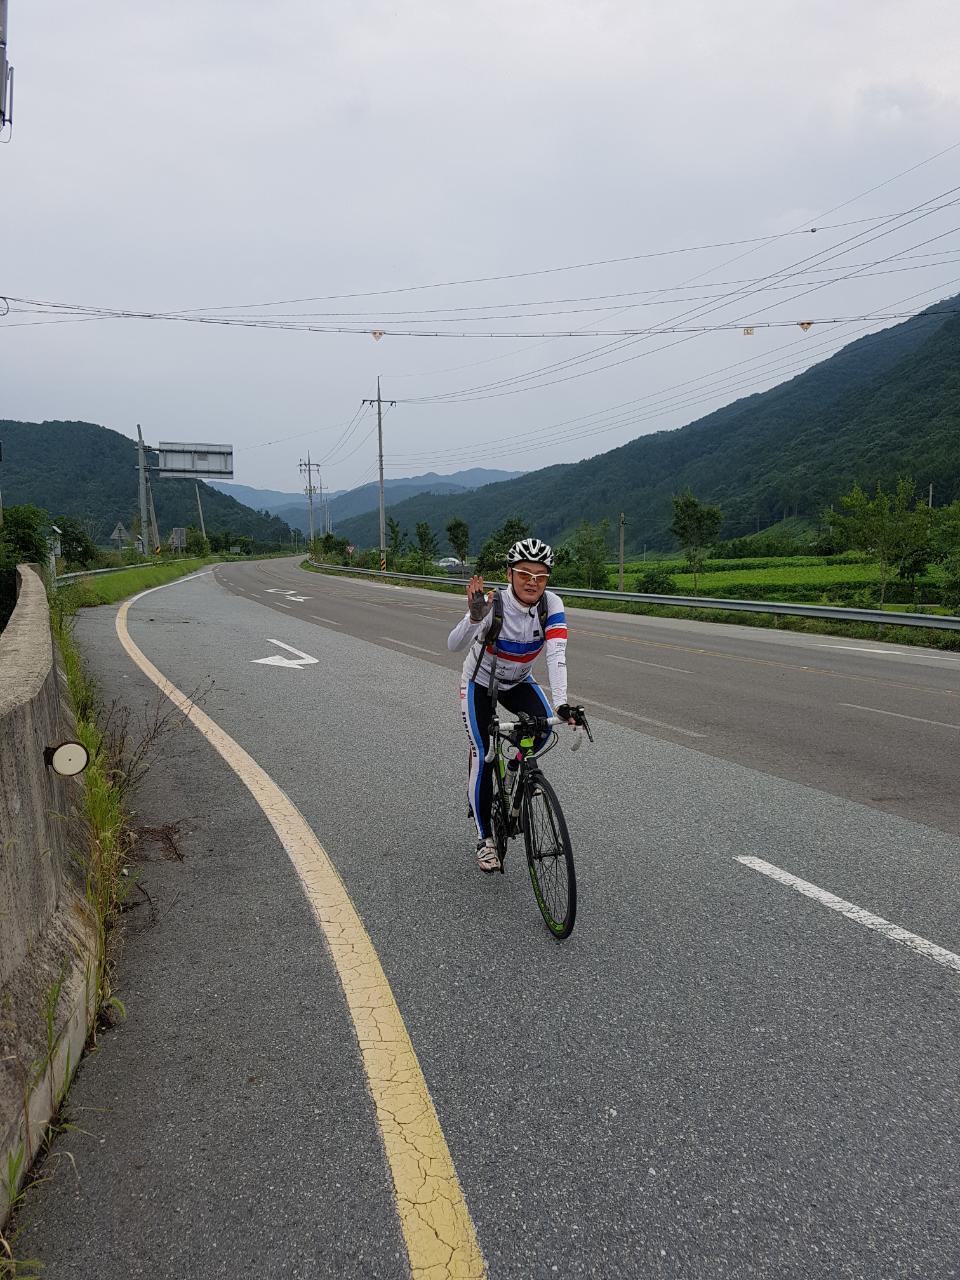 ‘길벗’ 김길중은 나이 50세의 한의사이고 5년차에 접어든 라이더이다. 생태교통시민행동 공동대표를 맡아 ‘자전거 도시’를 주창하는 사람 중 하나이다. 자전거로 도시를 안전하게 달리는 일이 세상을 평화롭고 살기 좋게 만드는 일이라고 강조한다.
